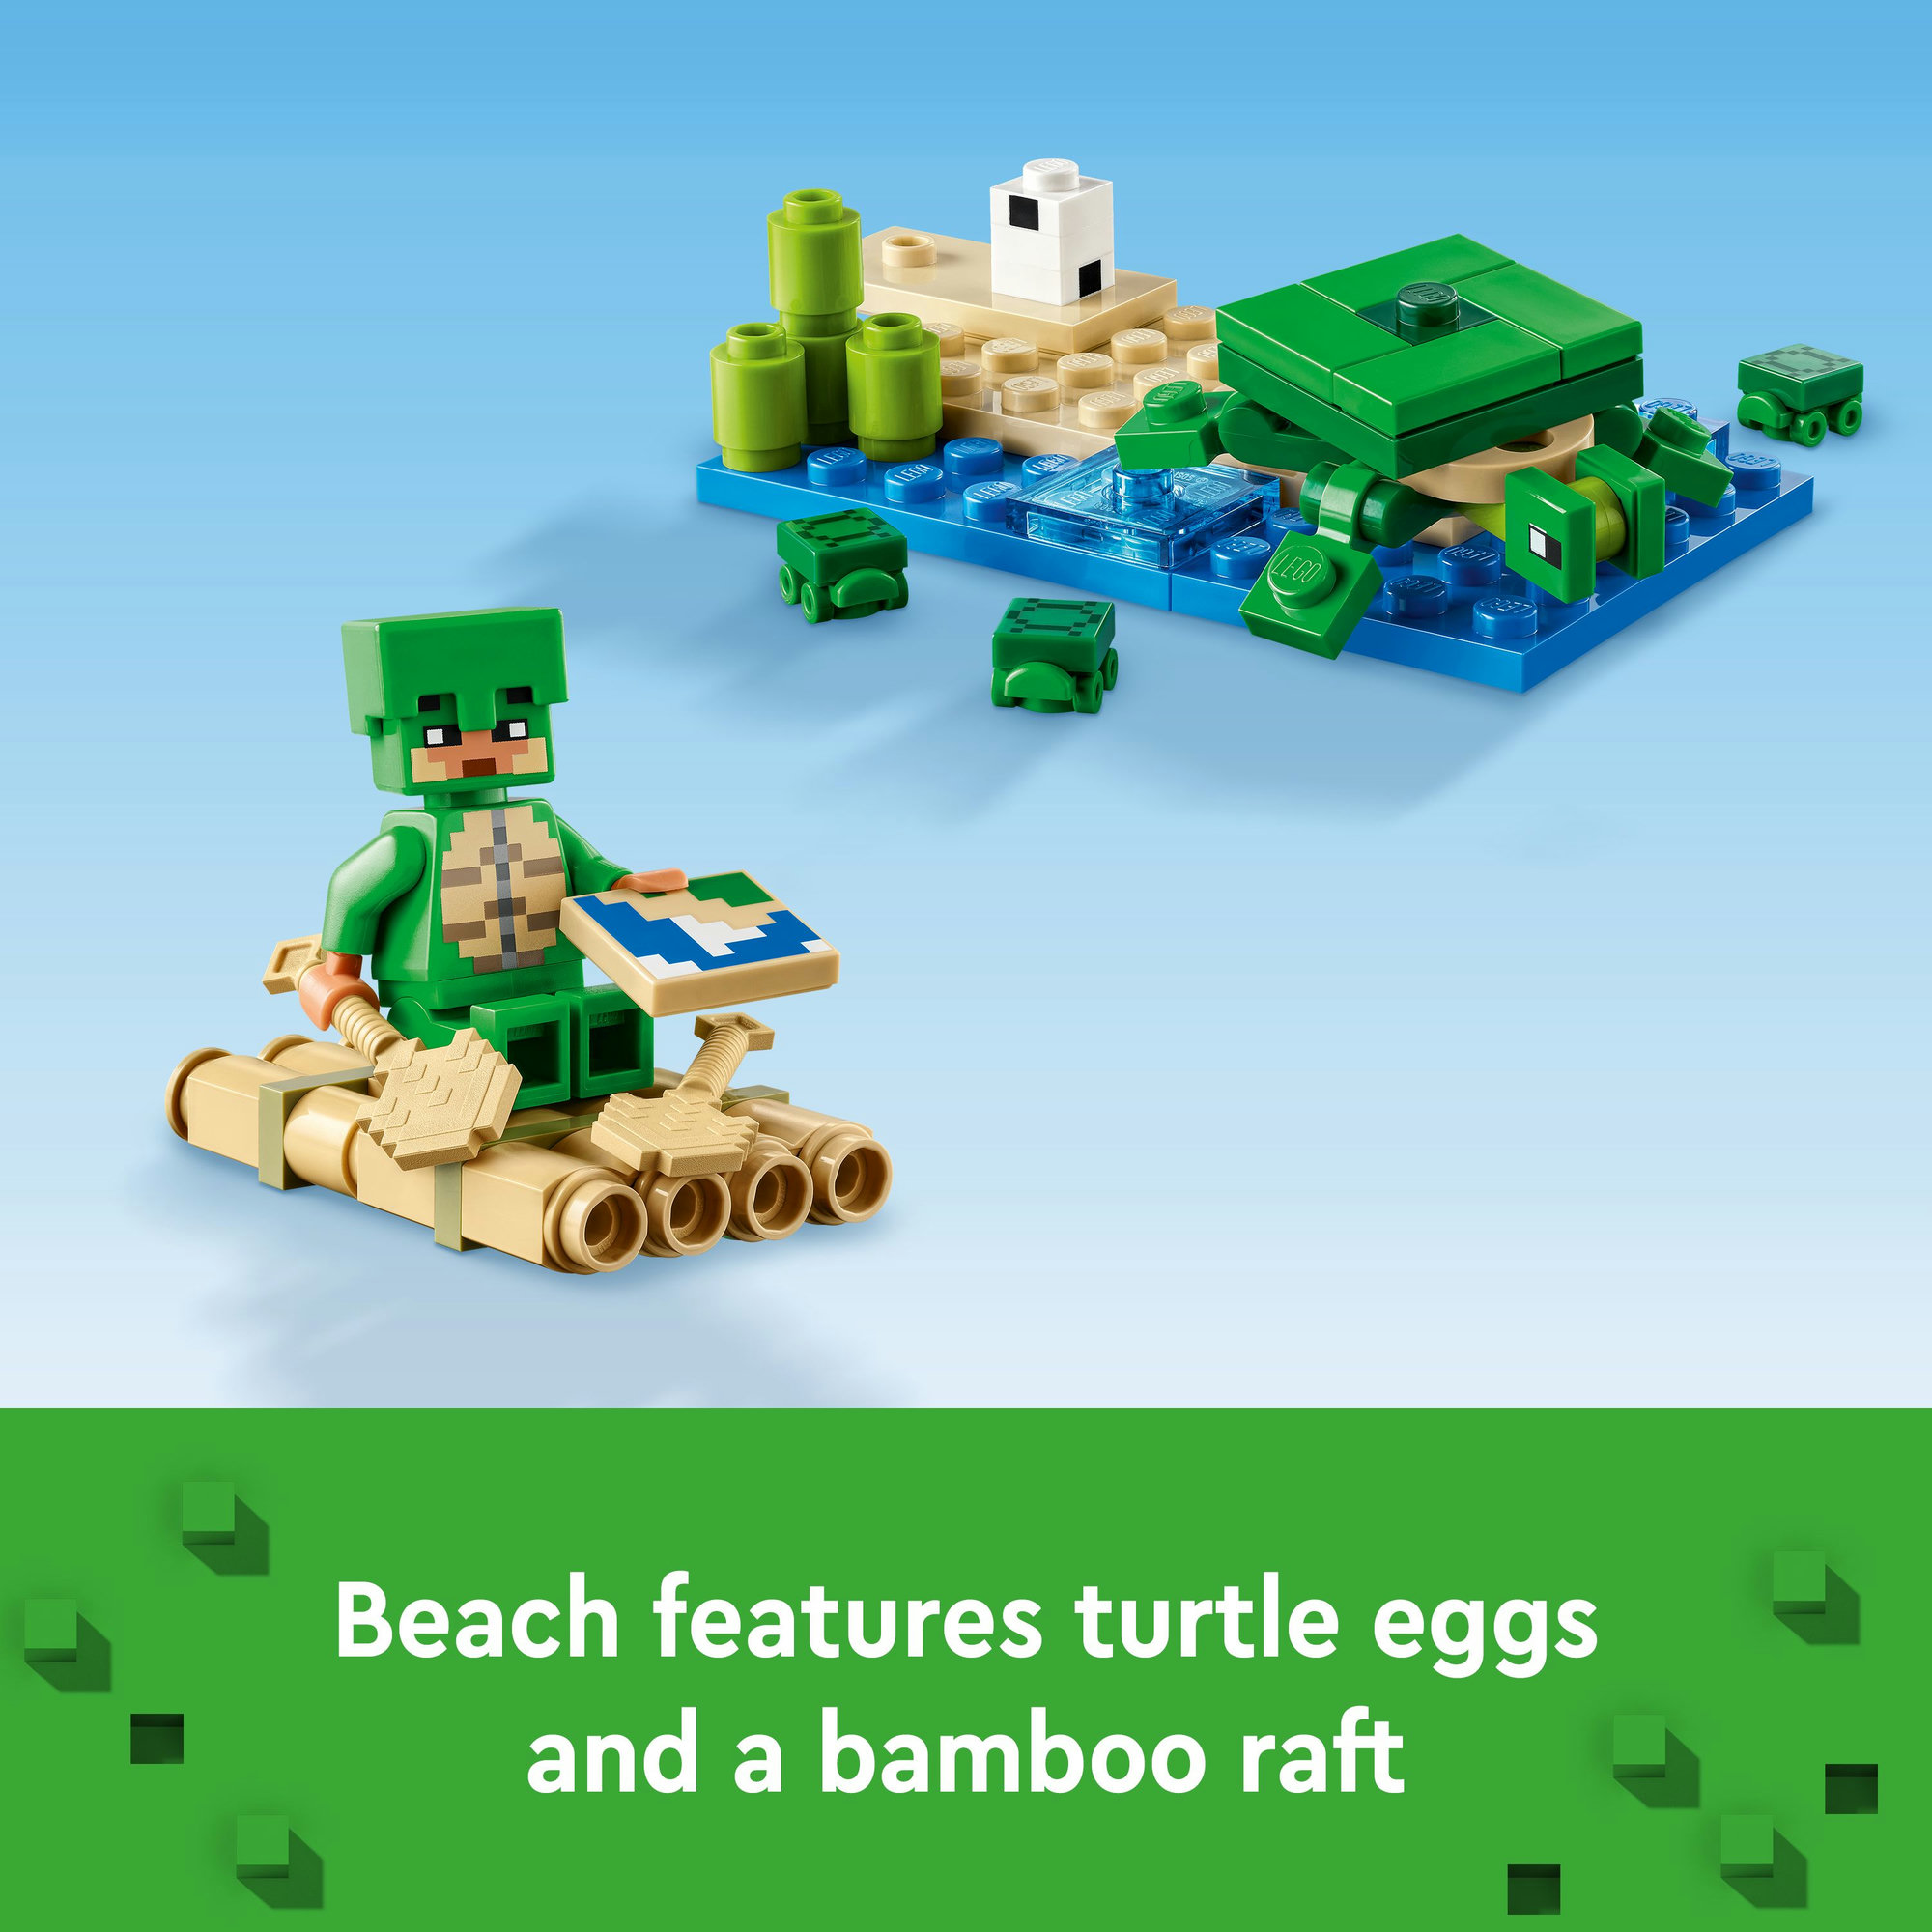 LEGO MINECRAFT 21254 Đồ chơi lắp ráp Ngôi nhà rùa biển (234 chi tiết)